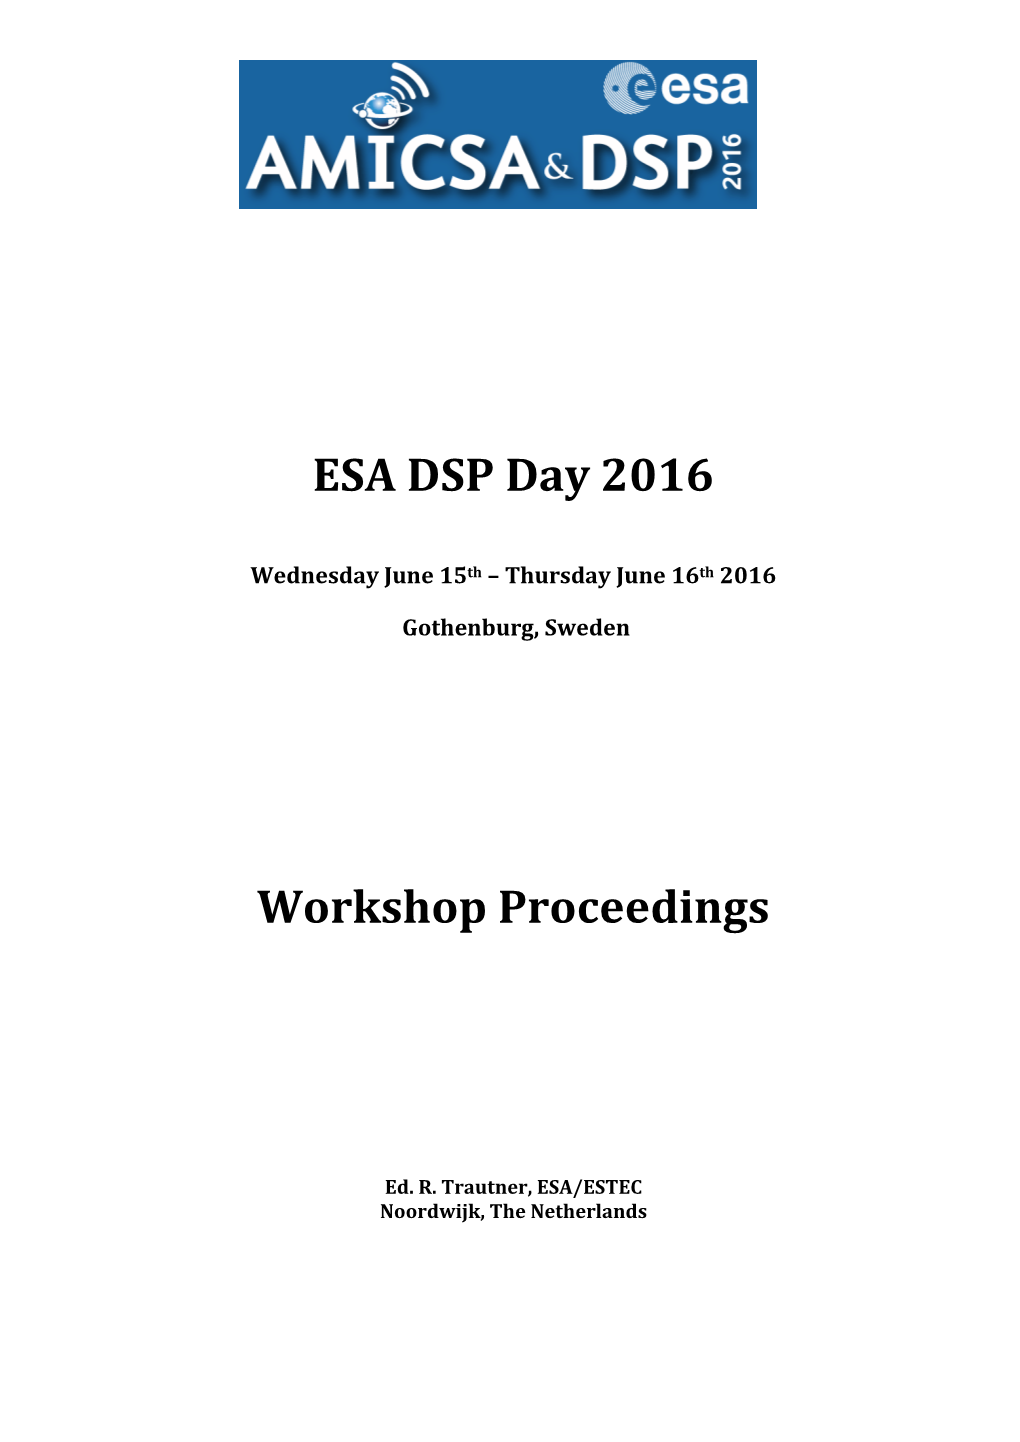 ESA DSP Day 2016 Workshop Proceedings